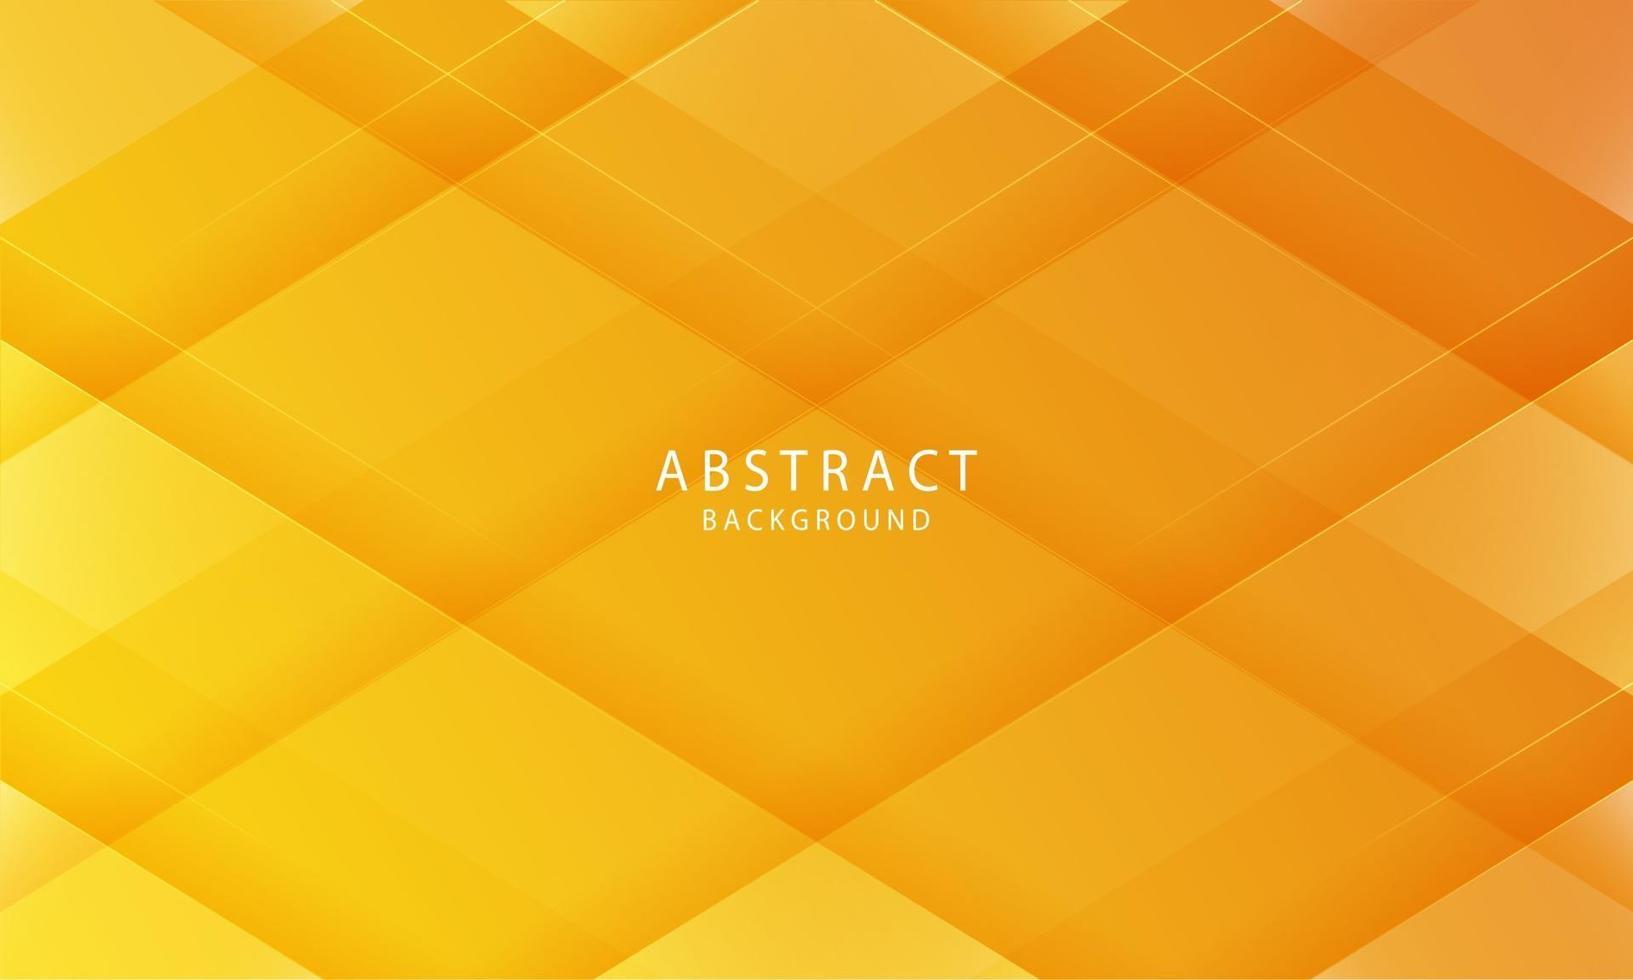 Fondo abstracto de color naranja con rayas diagonales. patrón geométrico mínimo. eps 10 vector